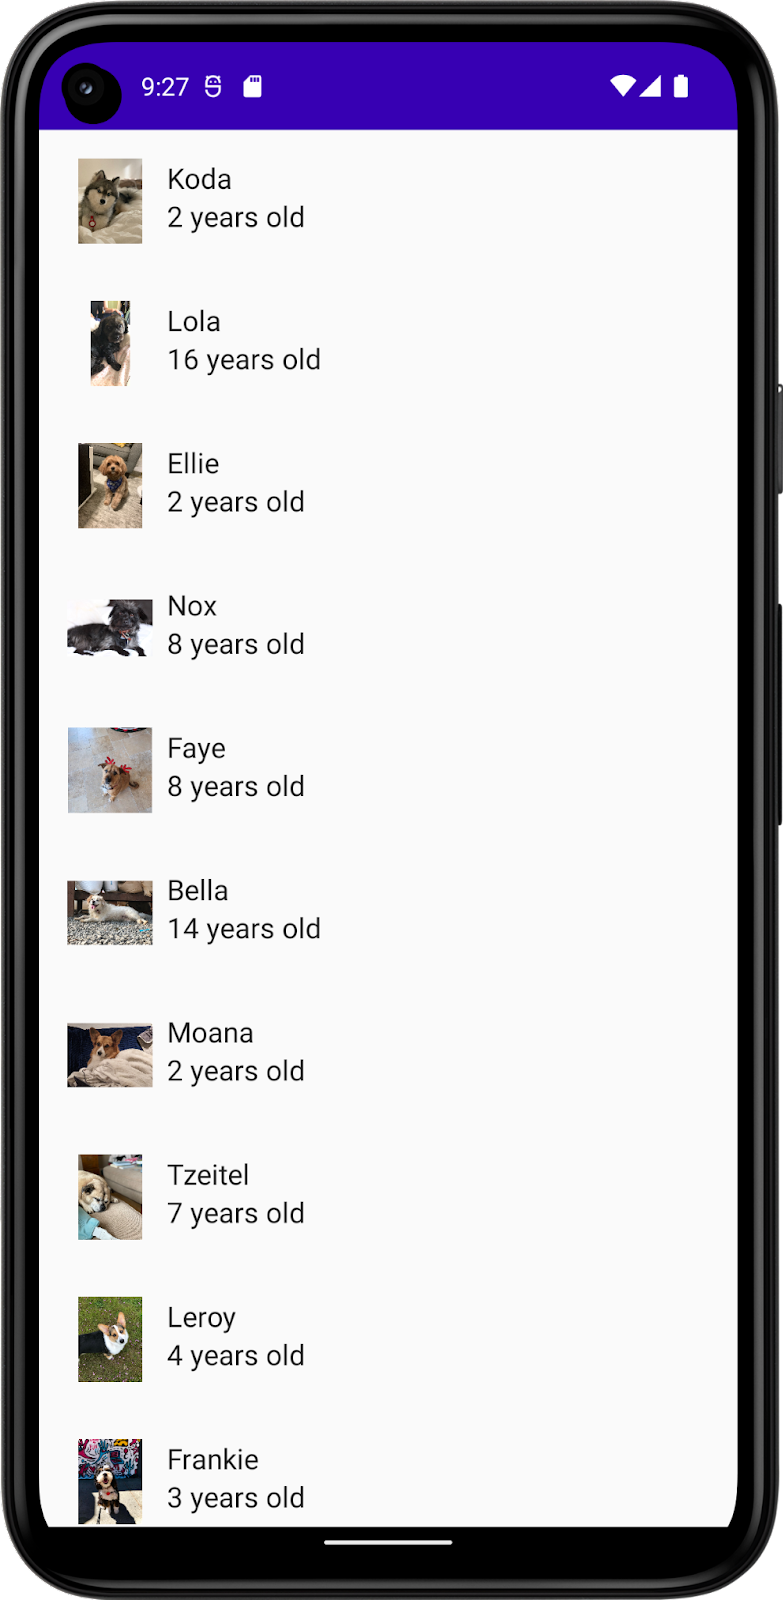 Cette image montre une application avec une liste de chiens, avec leur nom, leur photo et leur âge. 